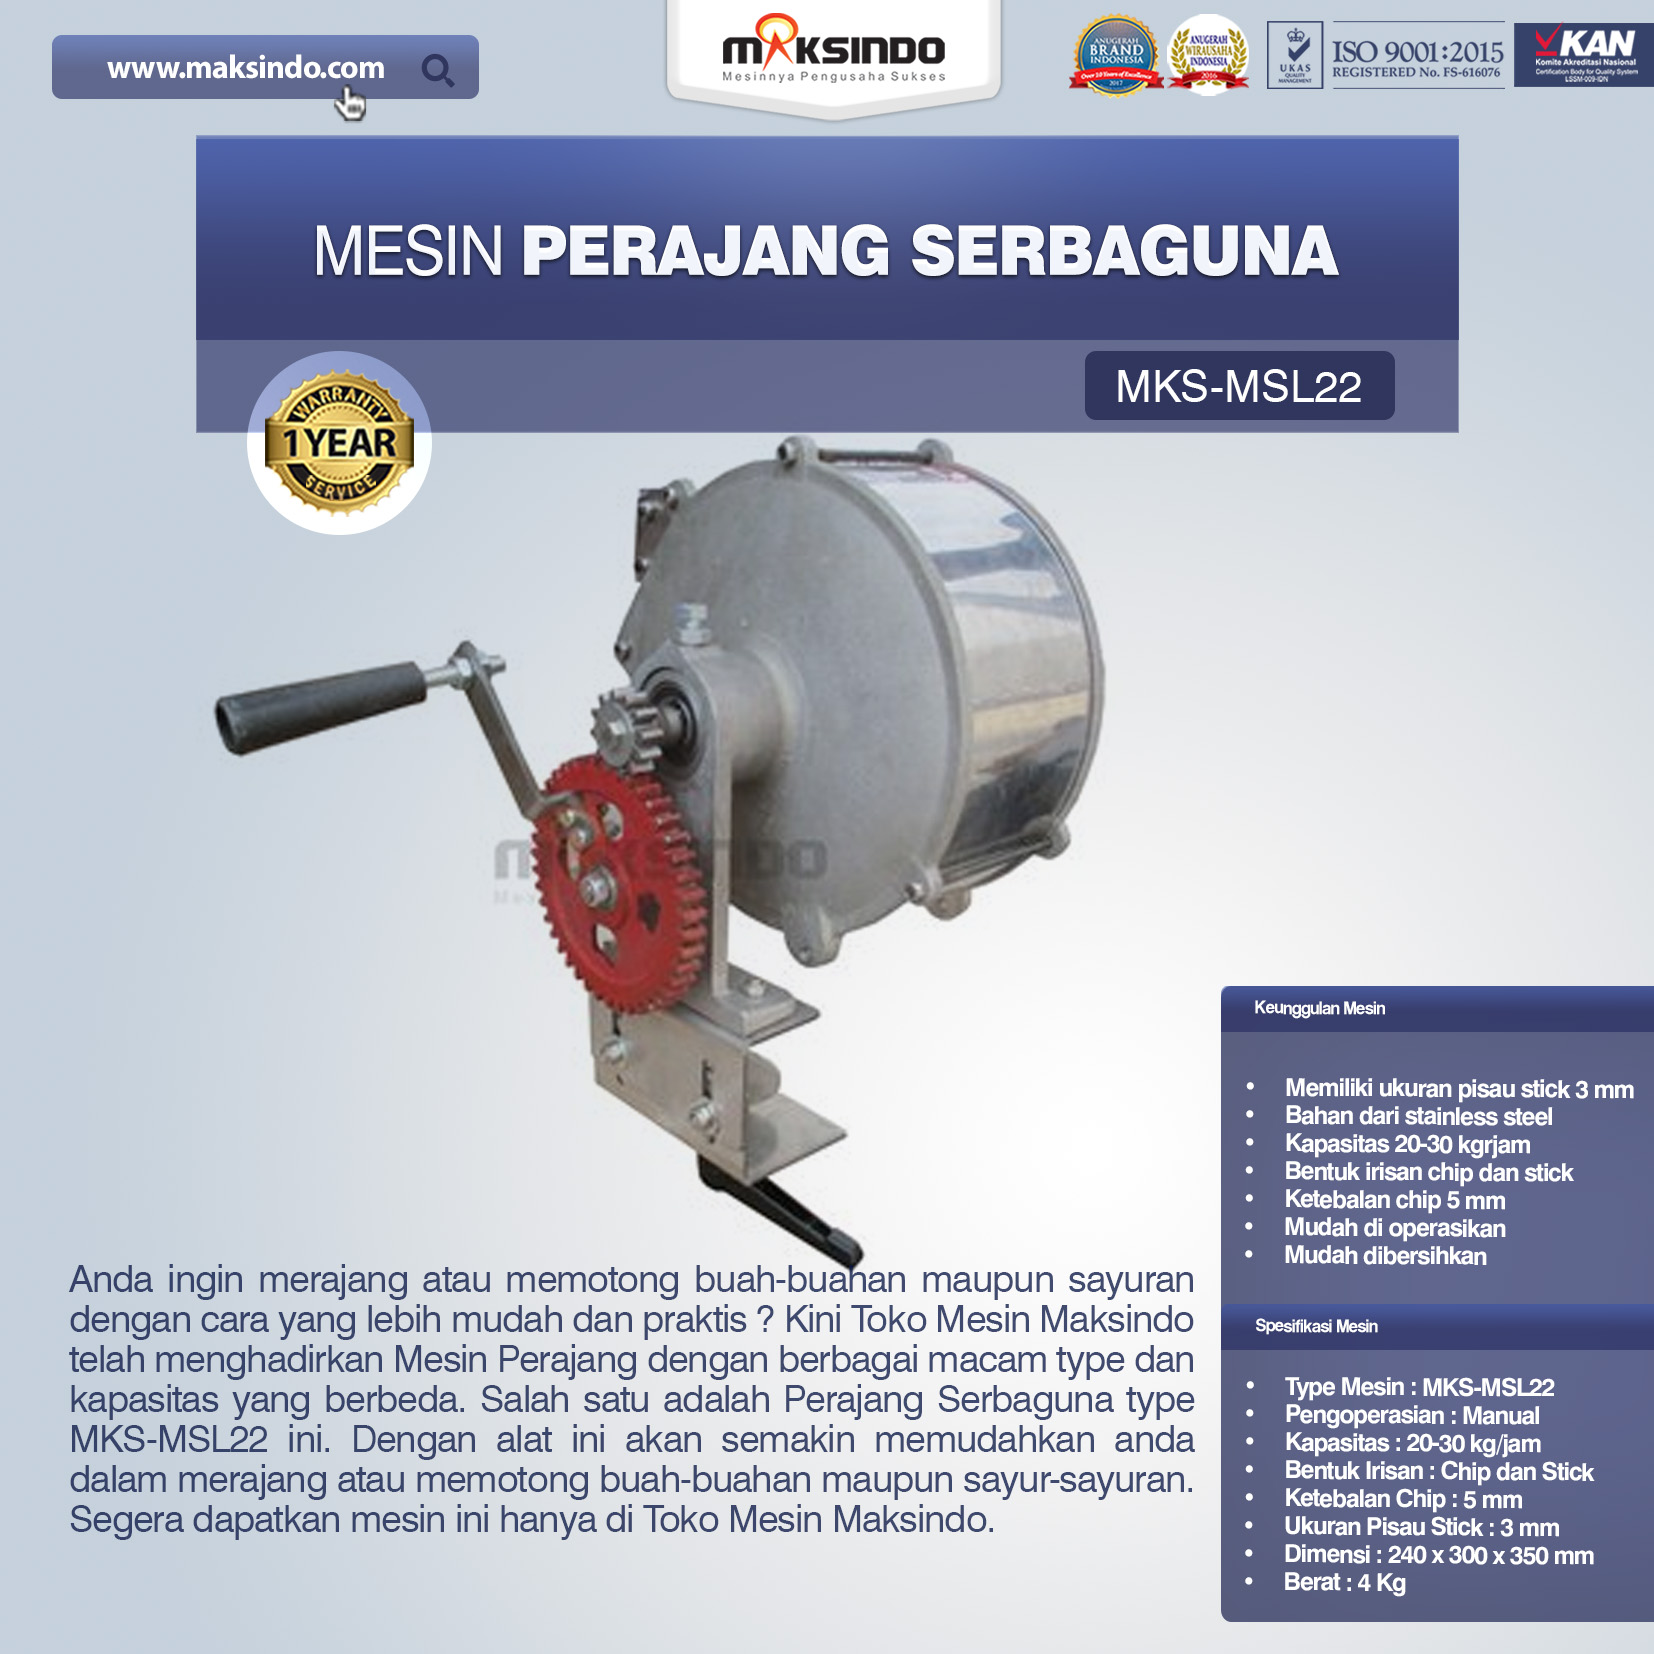 Jual Perajang Serbaguna MKS-MSL22 di Bogor